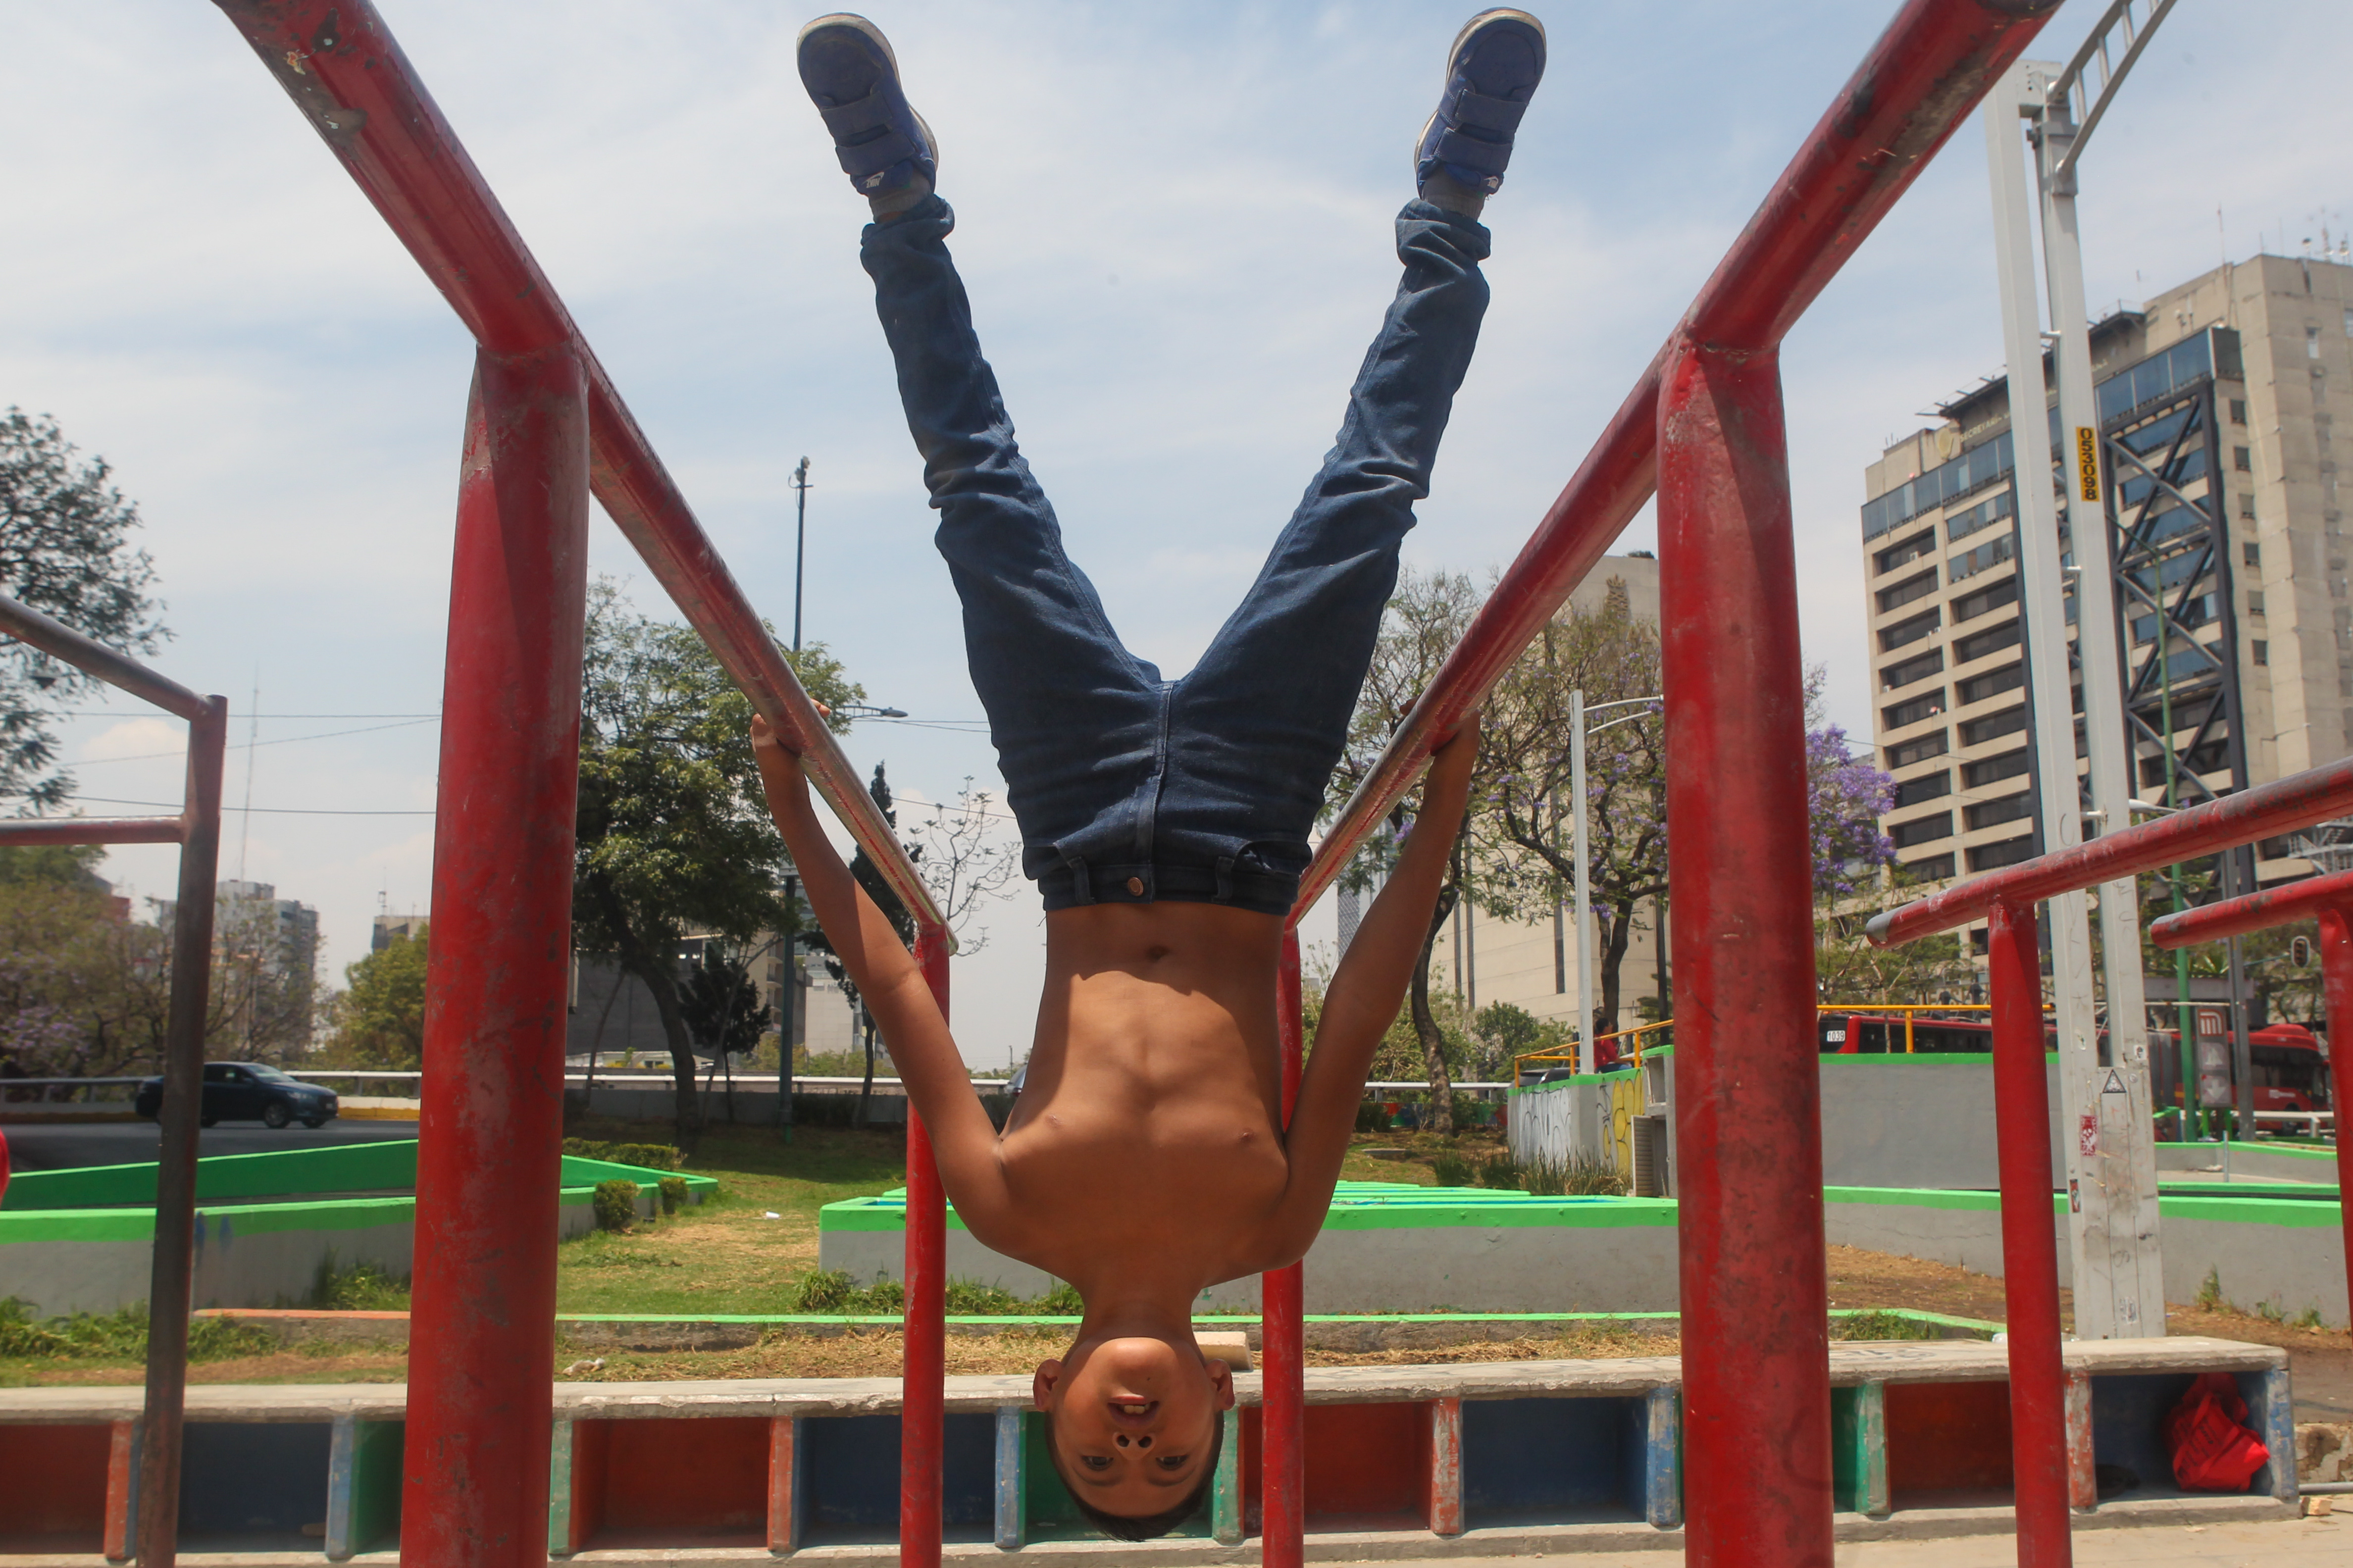 Christian durante la ejecución de ejercicios en las barras de Insurgentes, Ciudad de México. Abril 15, 2021